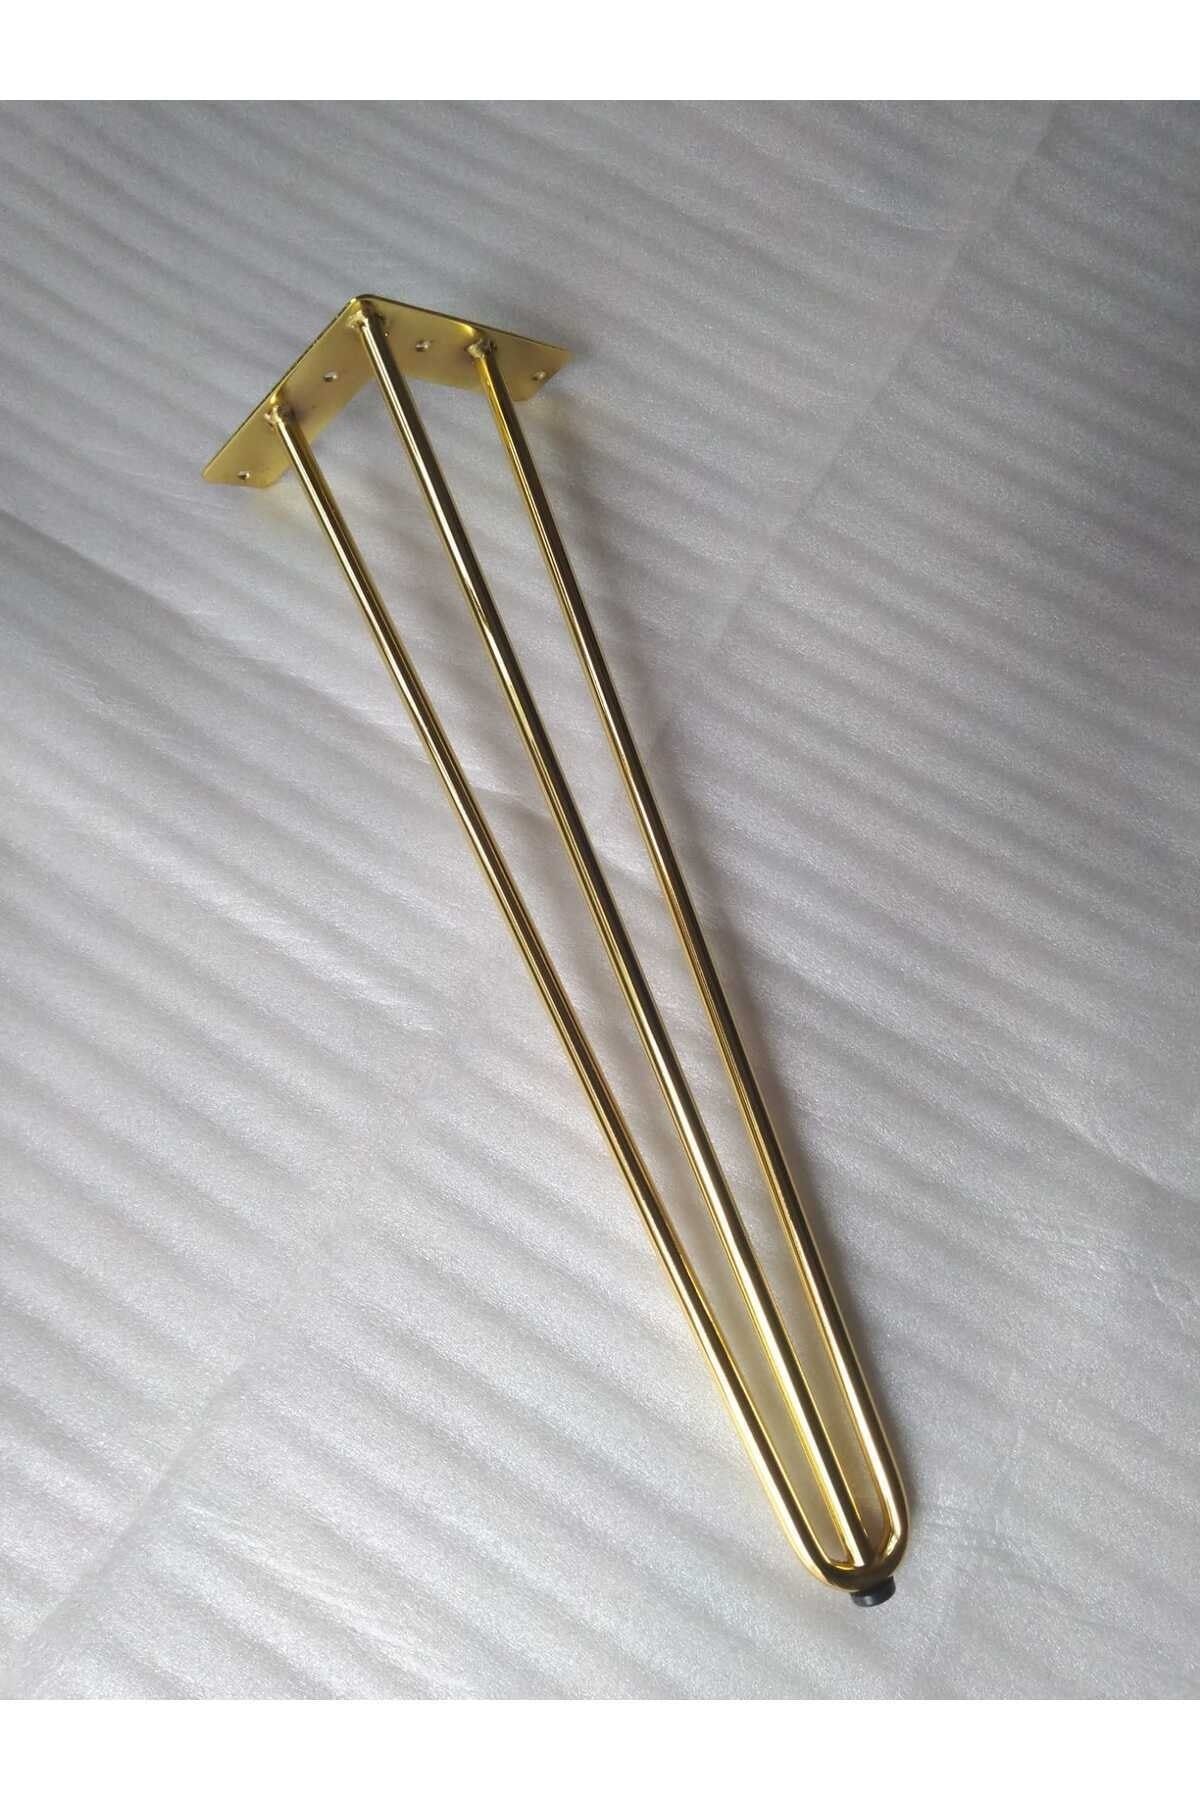 DEMONTEPARK 1 Adet-38,5cm Metal Firkete Ayak, Gold Renk Kaplama,masa Ayağı